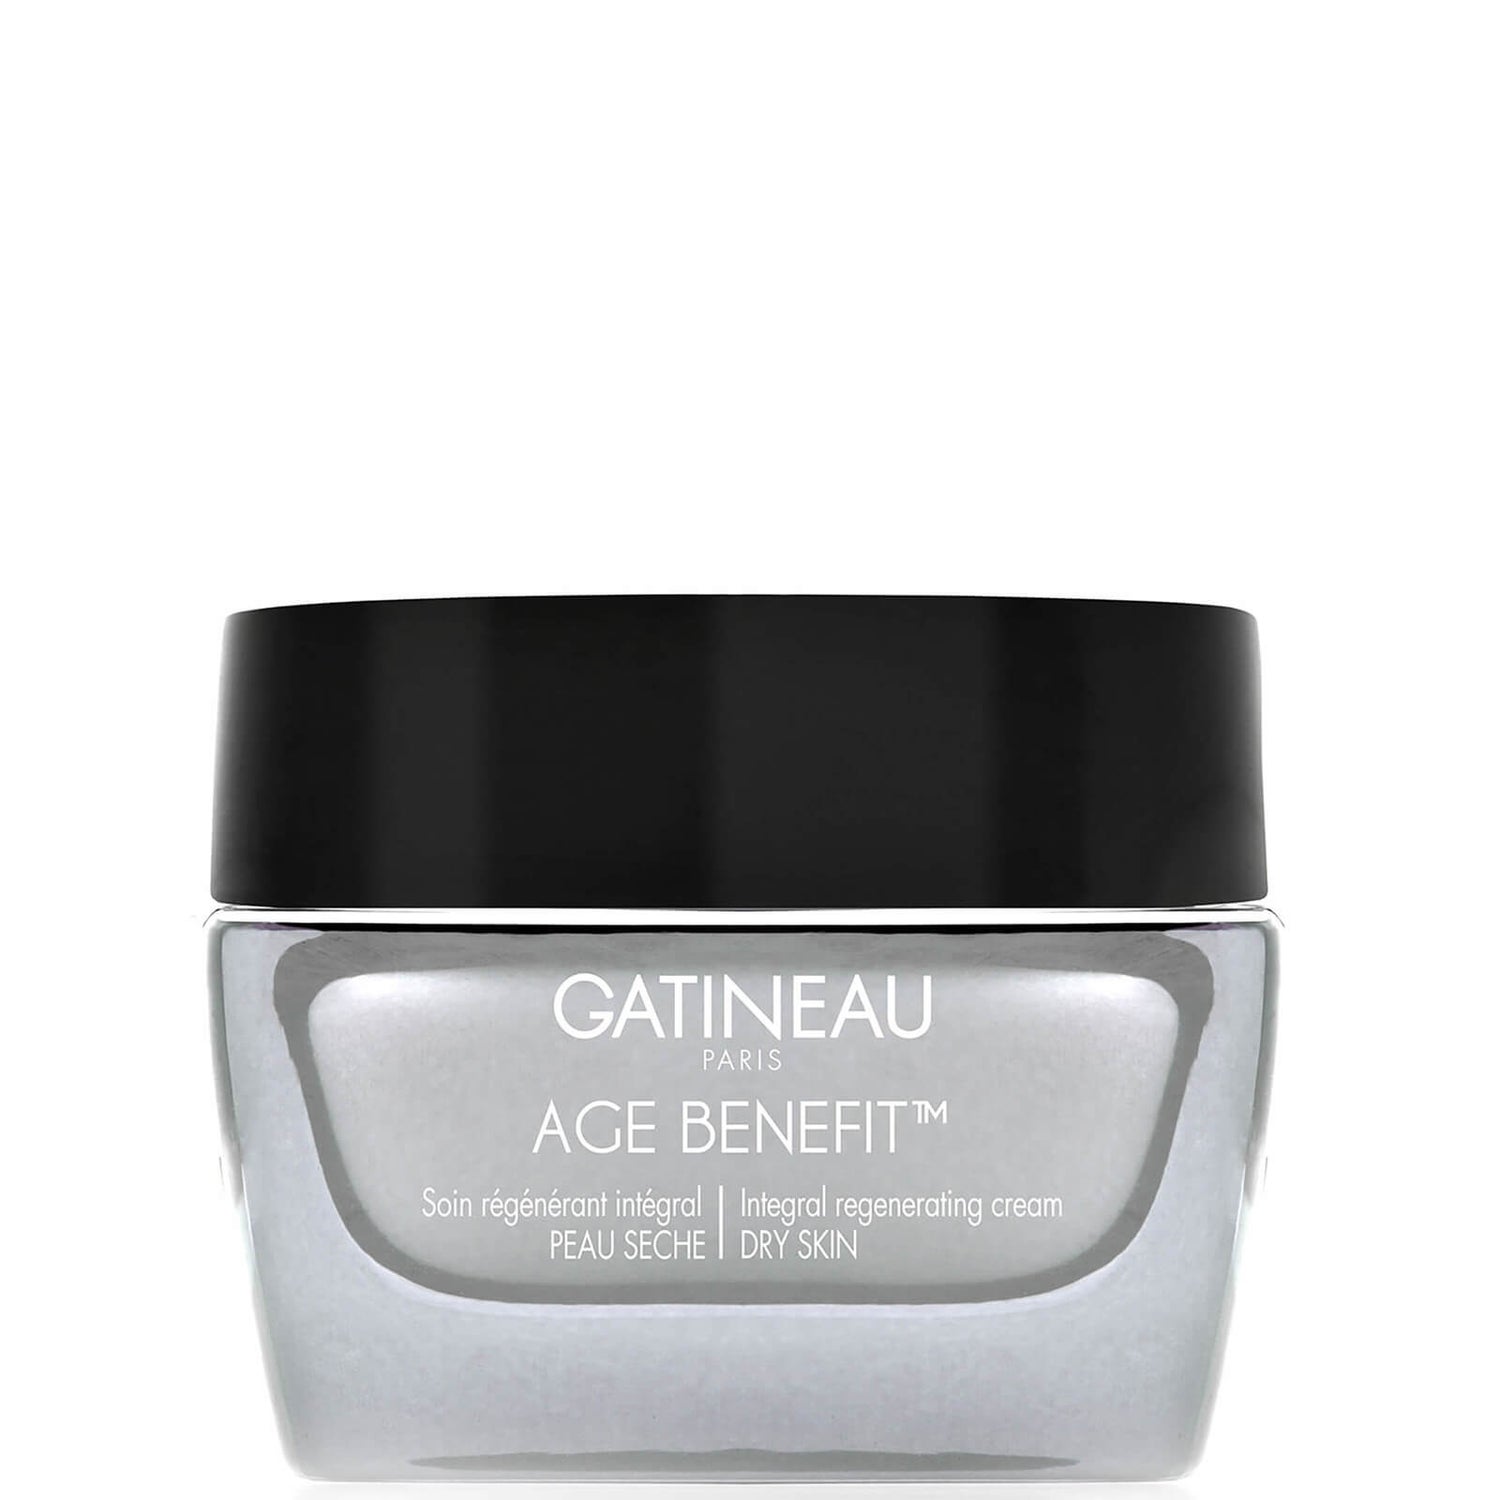 Gatineau Age Benefit crème régénerante intégrante - Peaux Sèches 50ml